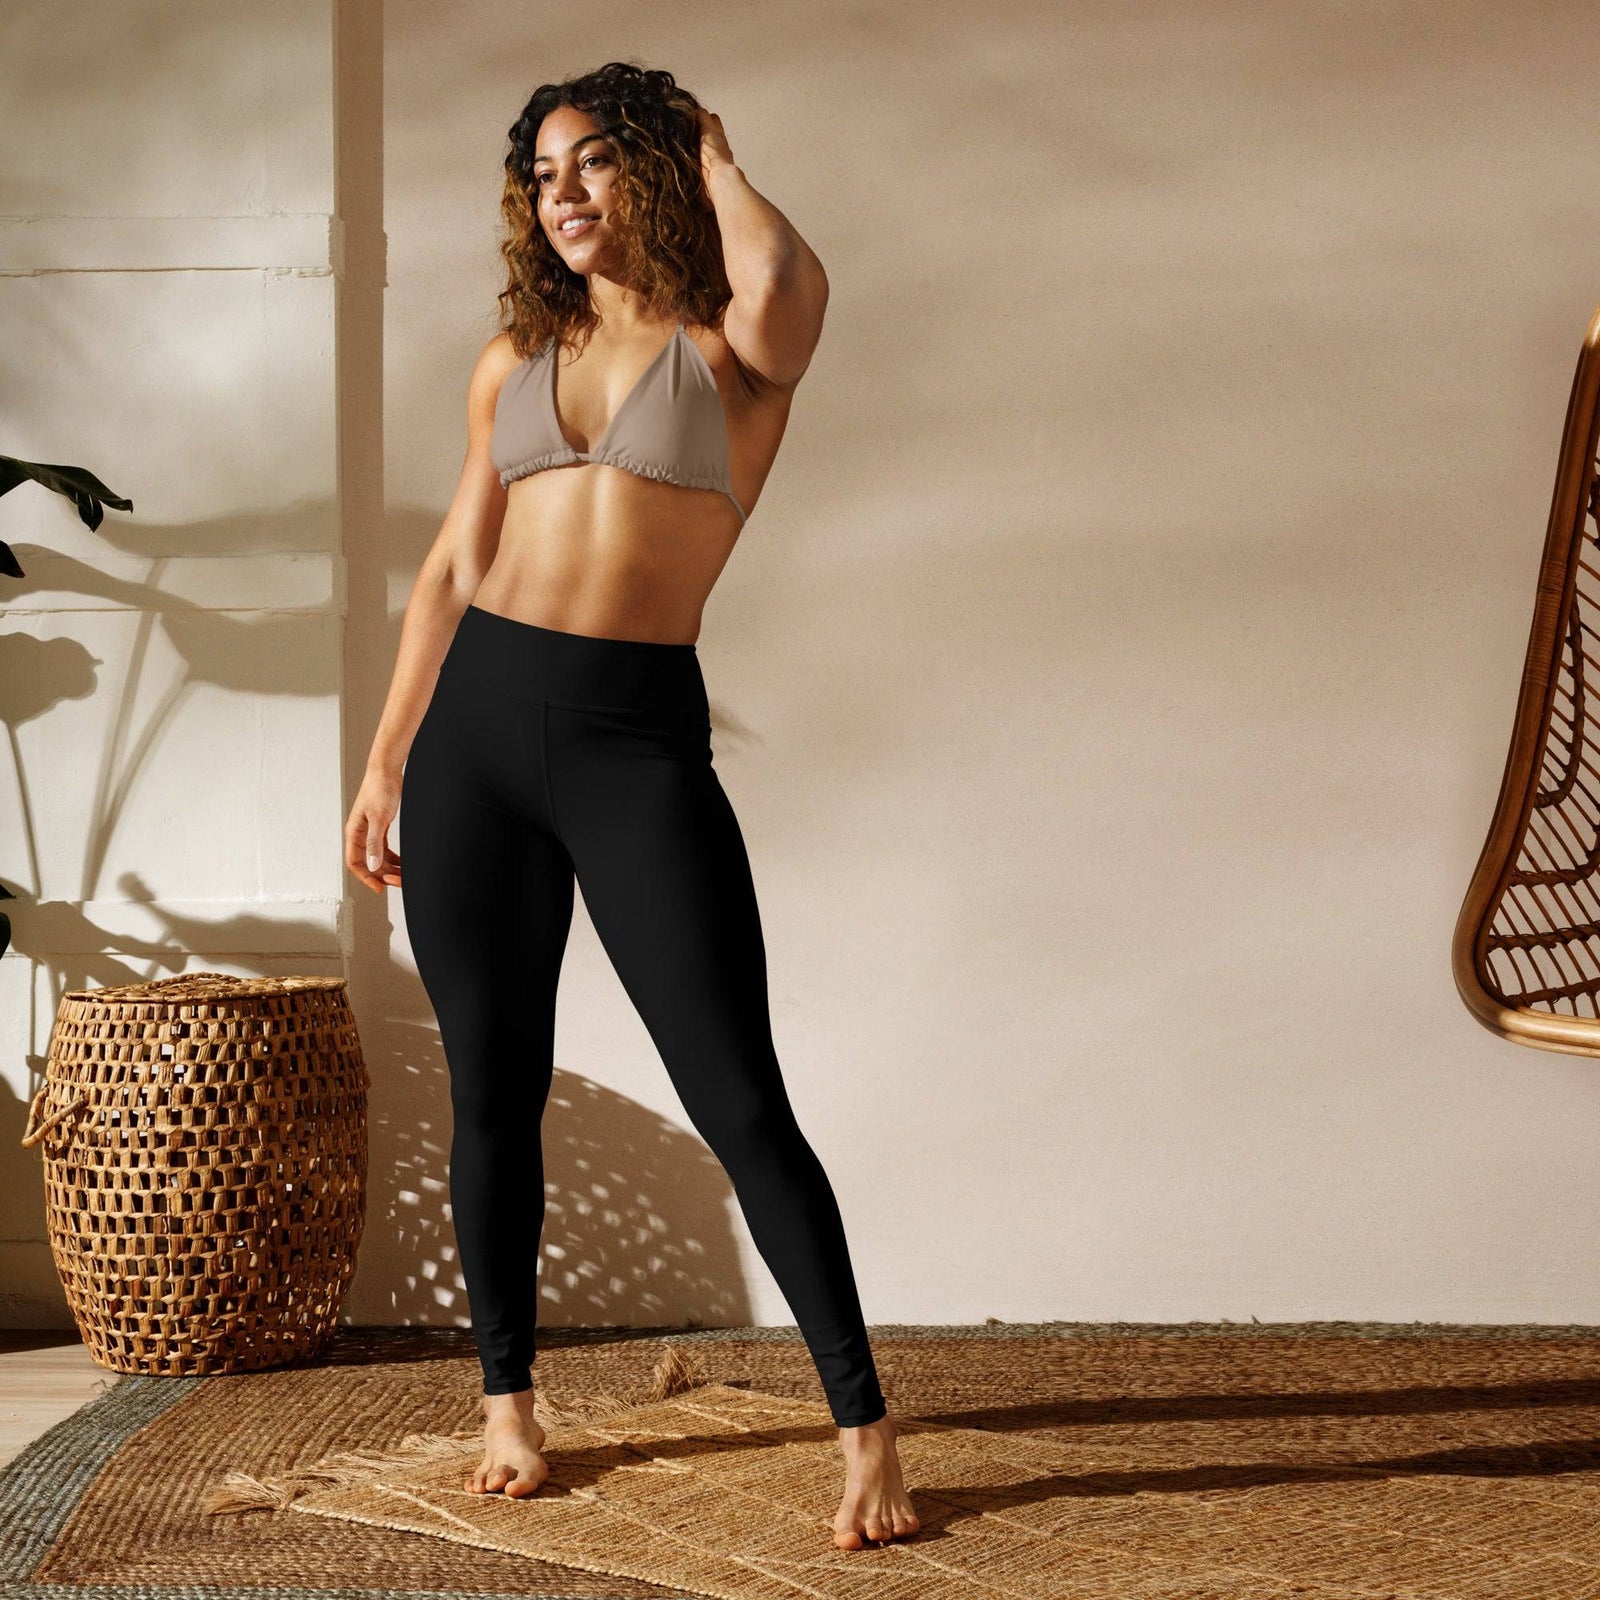 https://revivewear.com.au/cdn/shop/files/women_s-full-length-yoga-leggings-black-front-view_1600x.jpg?v=1707357153